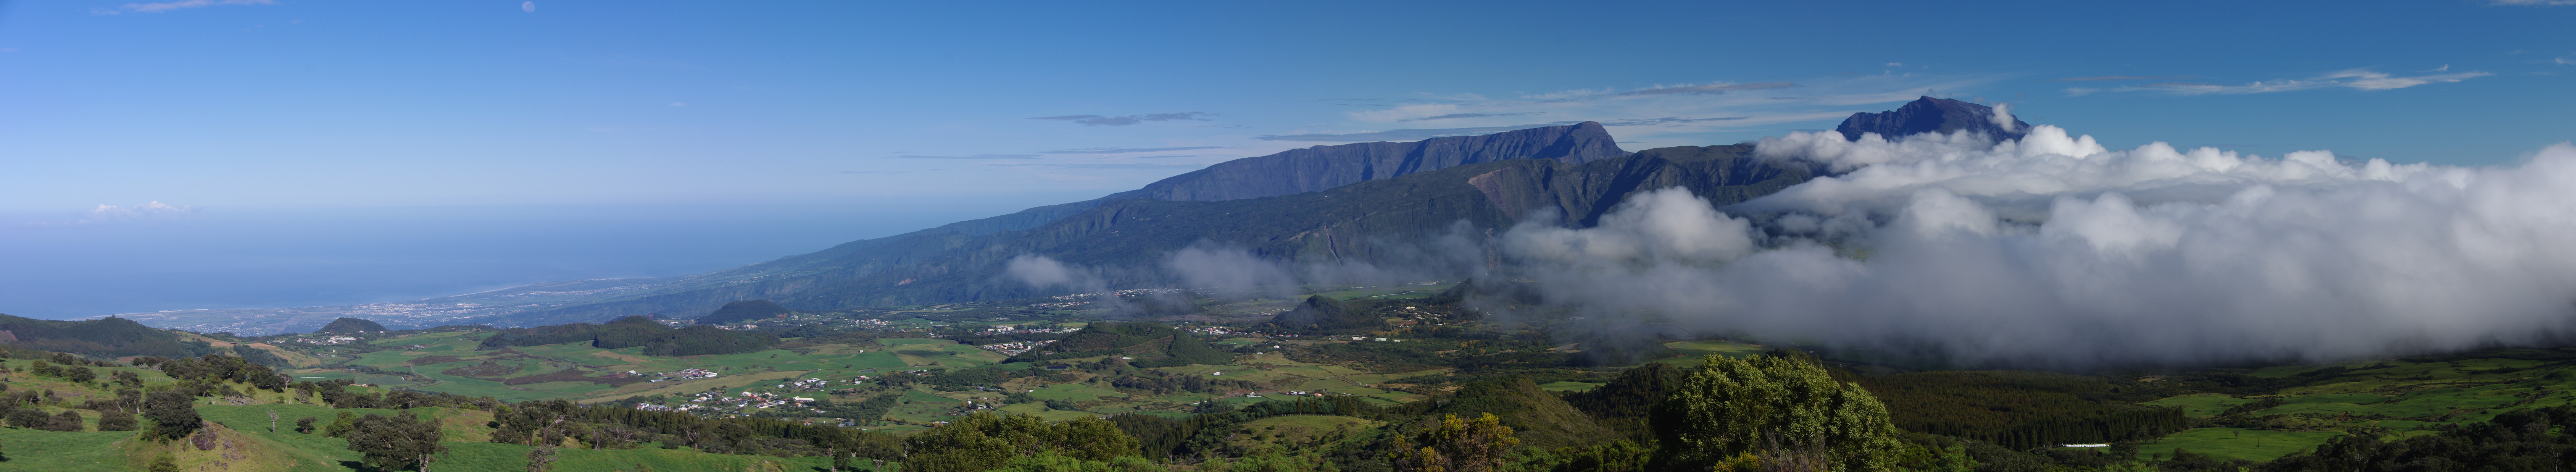 Le piton des Neiges vu depuis celui de la Fournaise (panoramique)